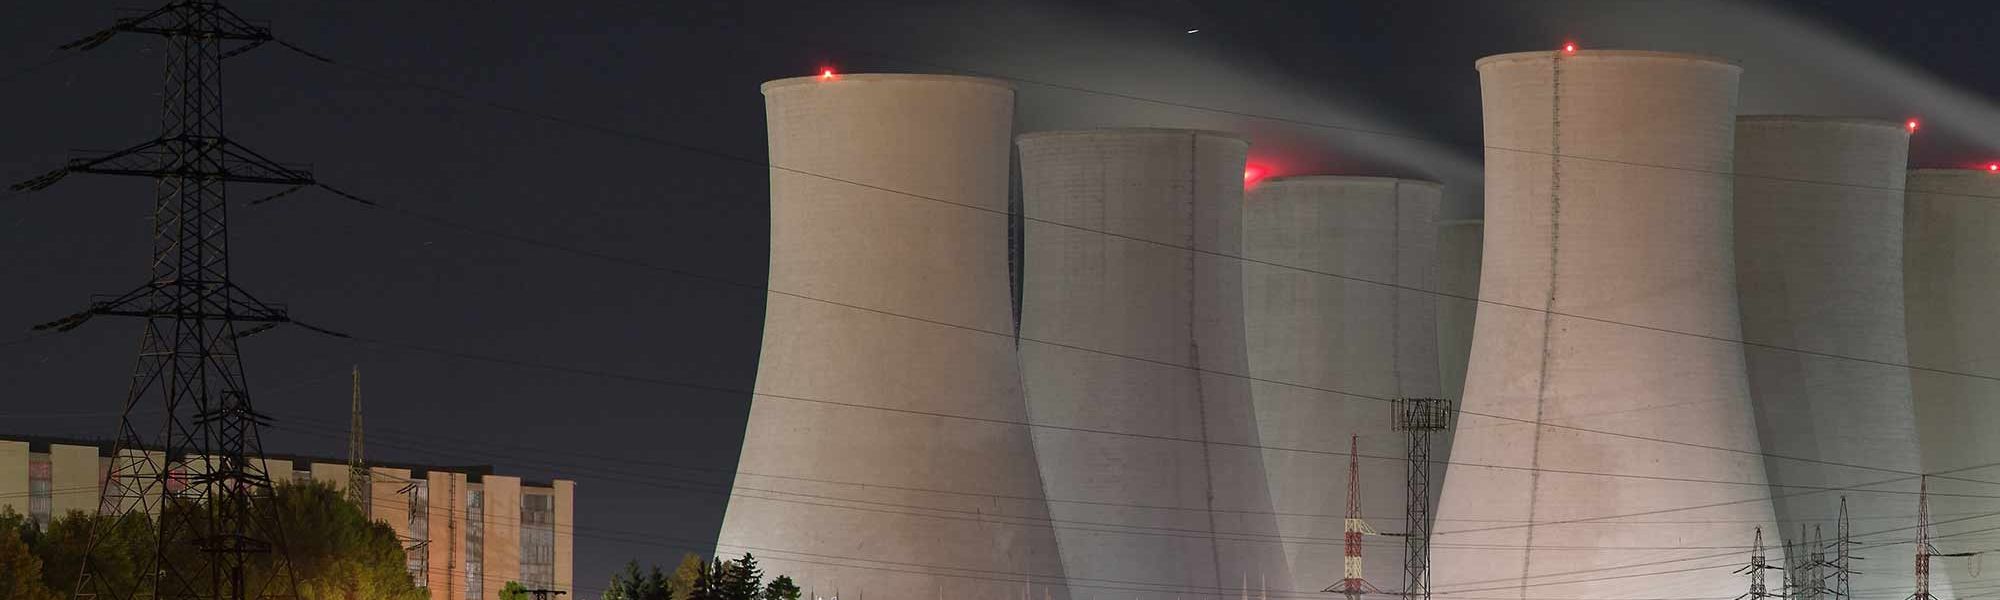 Nuclear Power 2000x1300